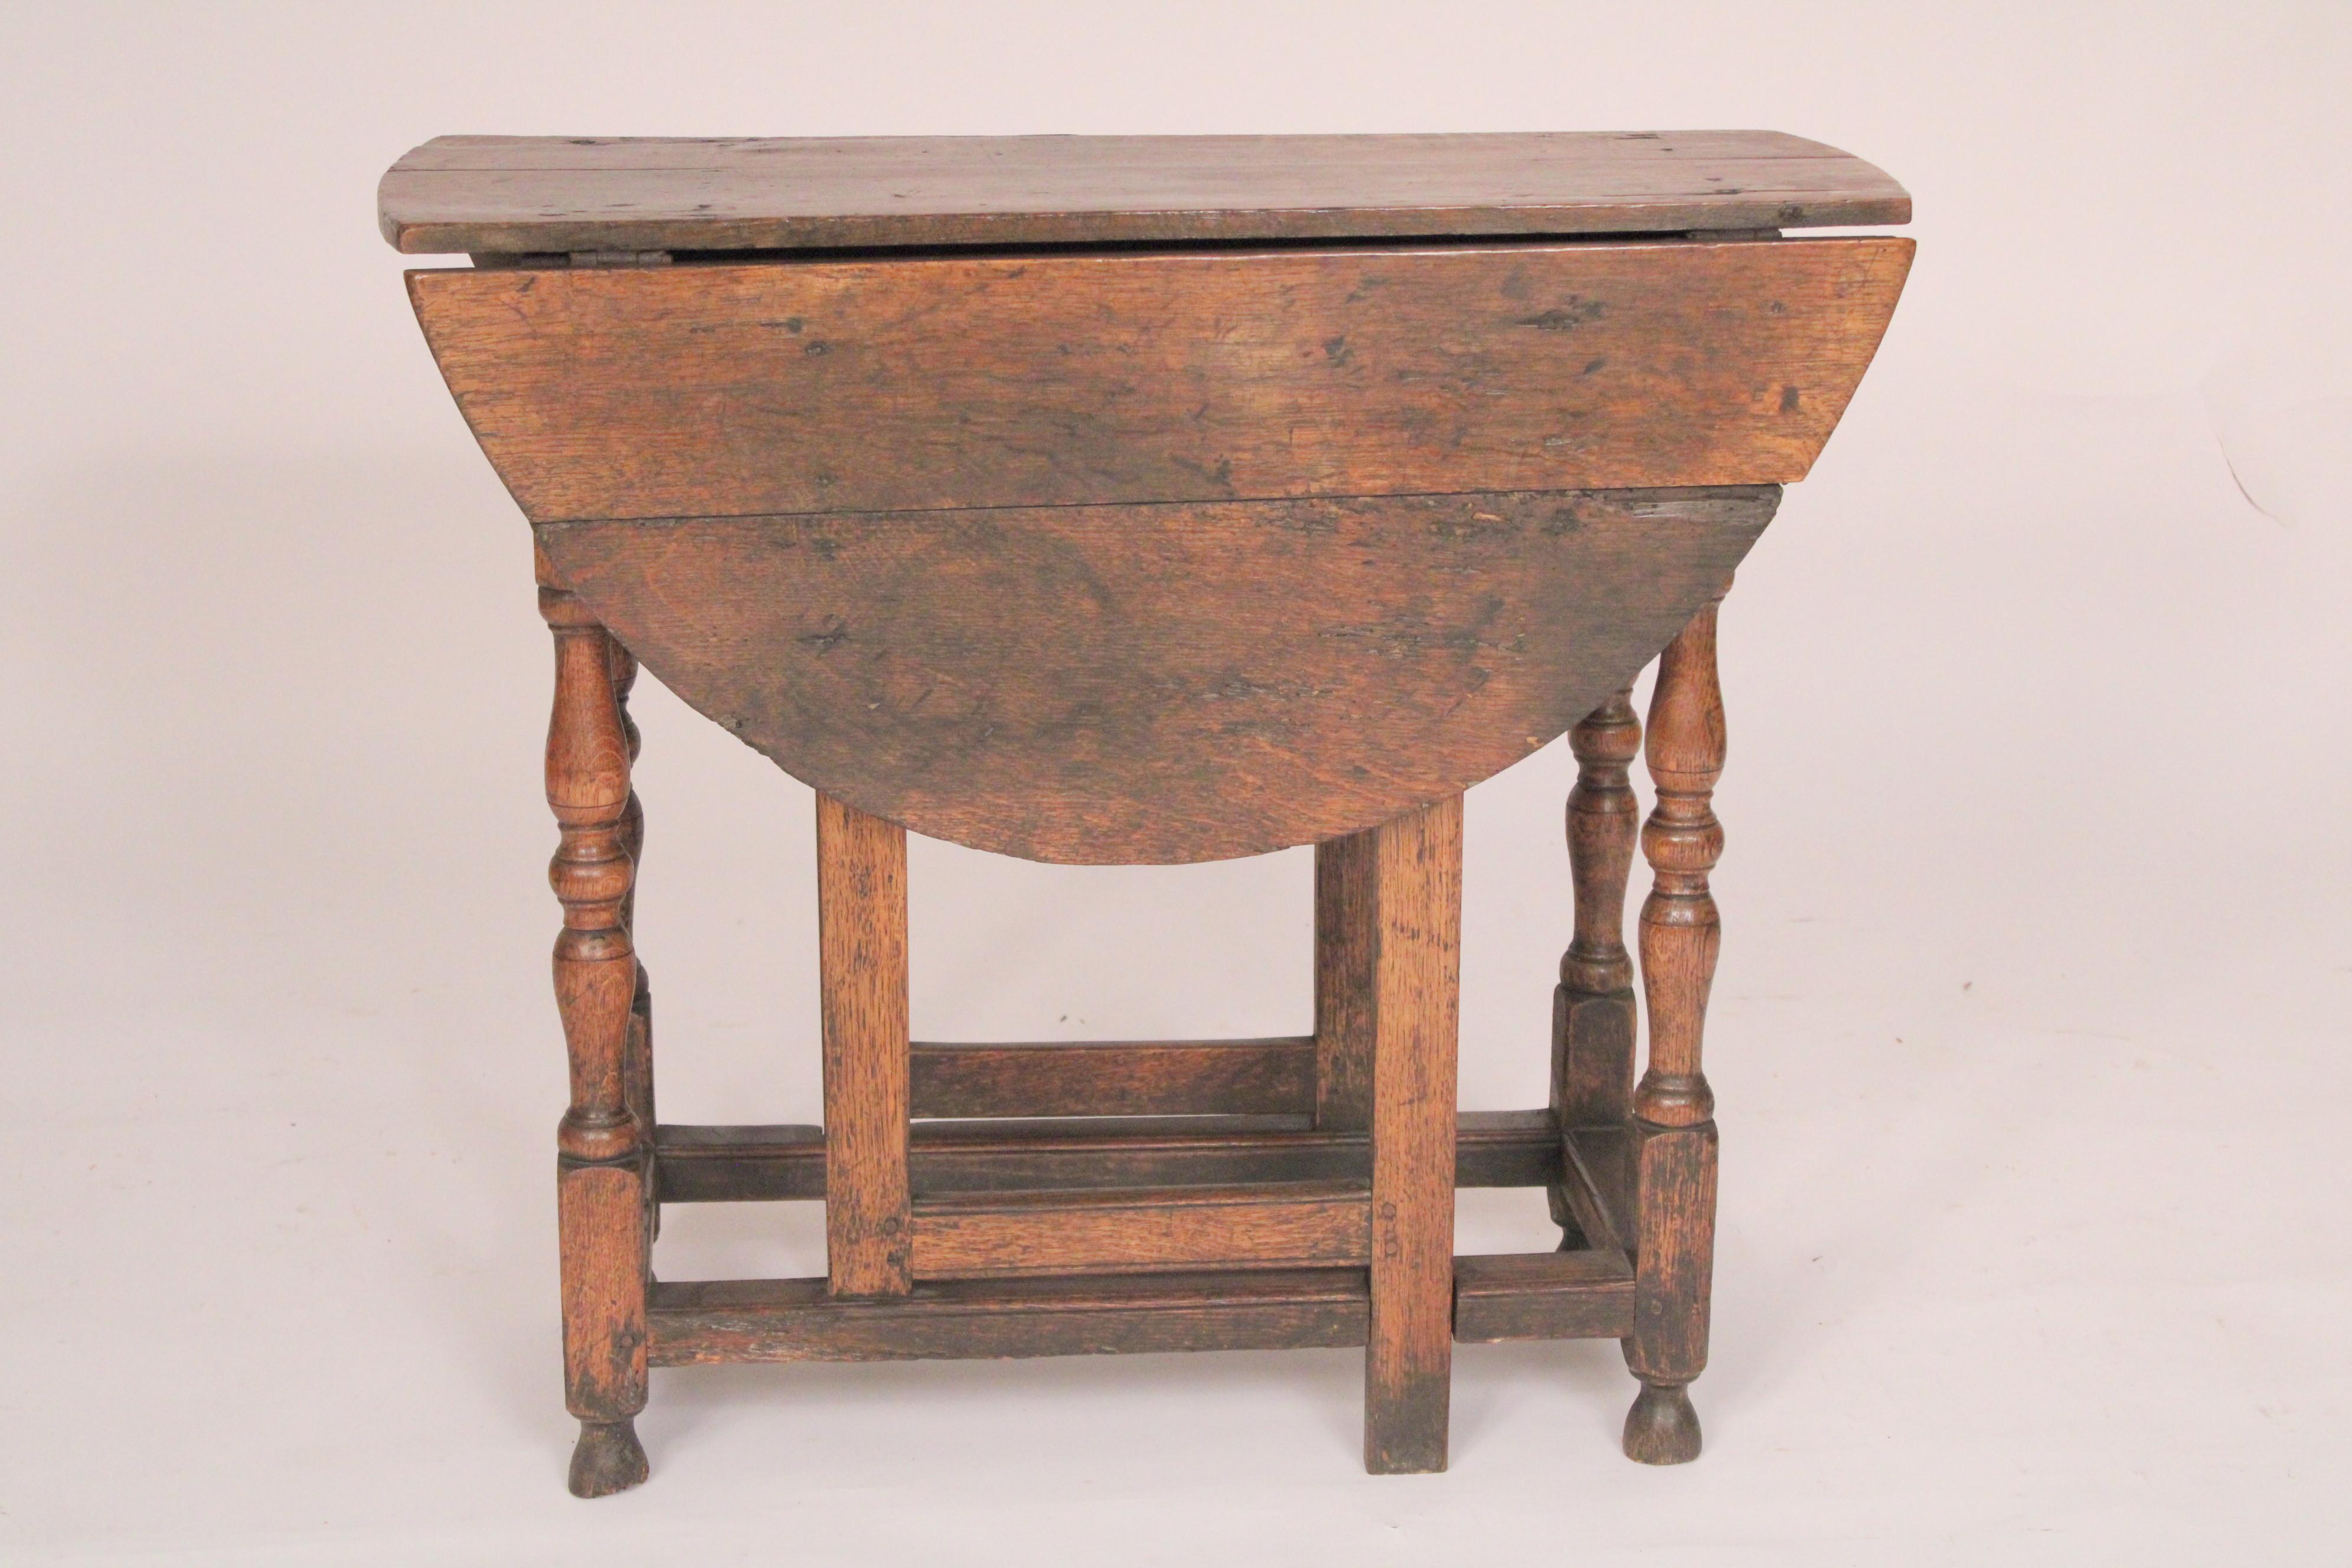 Eichenholztisch im William-and-Mary-Stil, 18. Jahrhundert. Mit zwei D-förmigen, viertelgesägten Eichenblättern und einer viertelgesägten Eichenplatte, einer Friesschublade, gedrechselten Beinen mit Streckstäben, die auf gedrechselten Füßen ruhen.